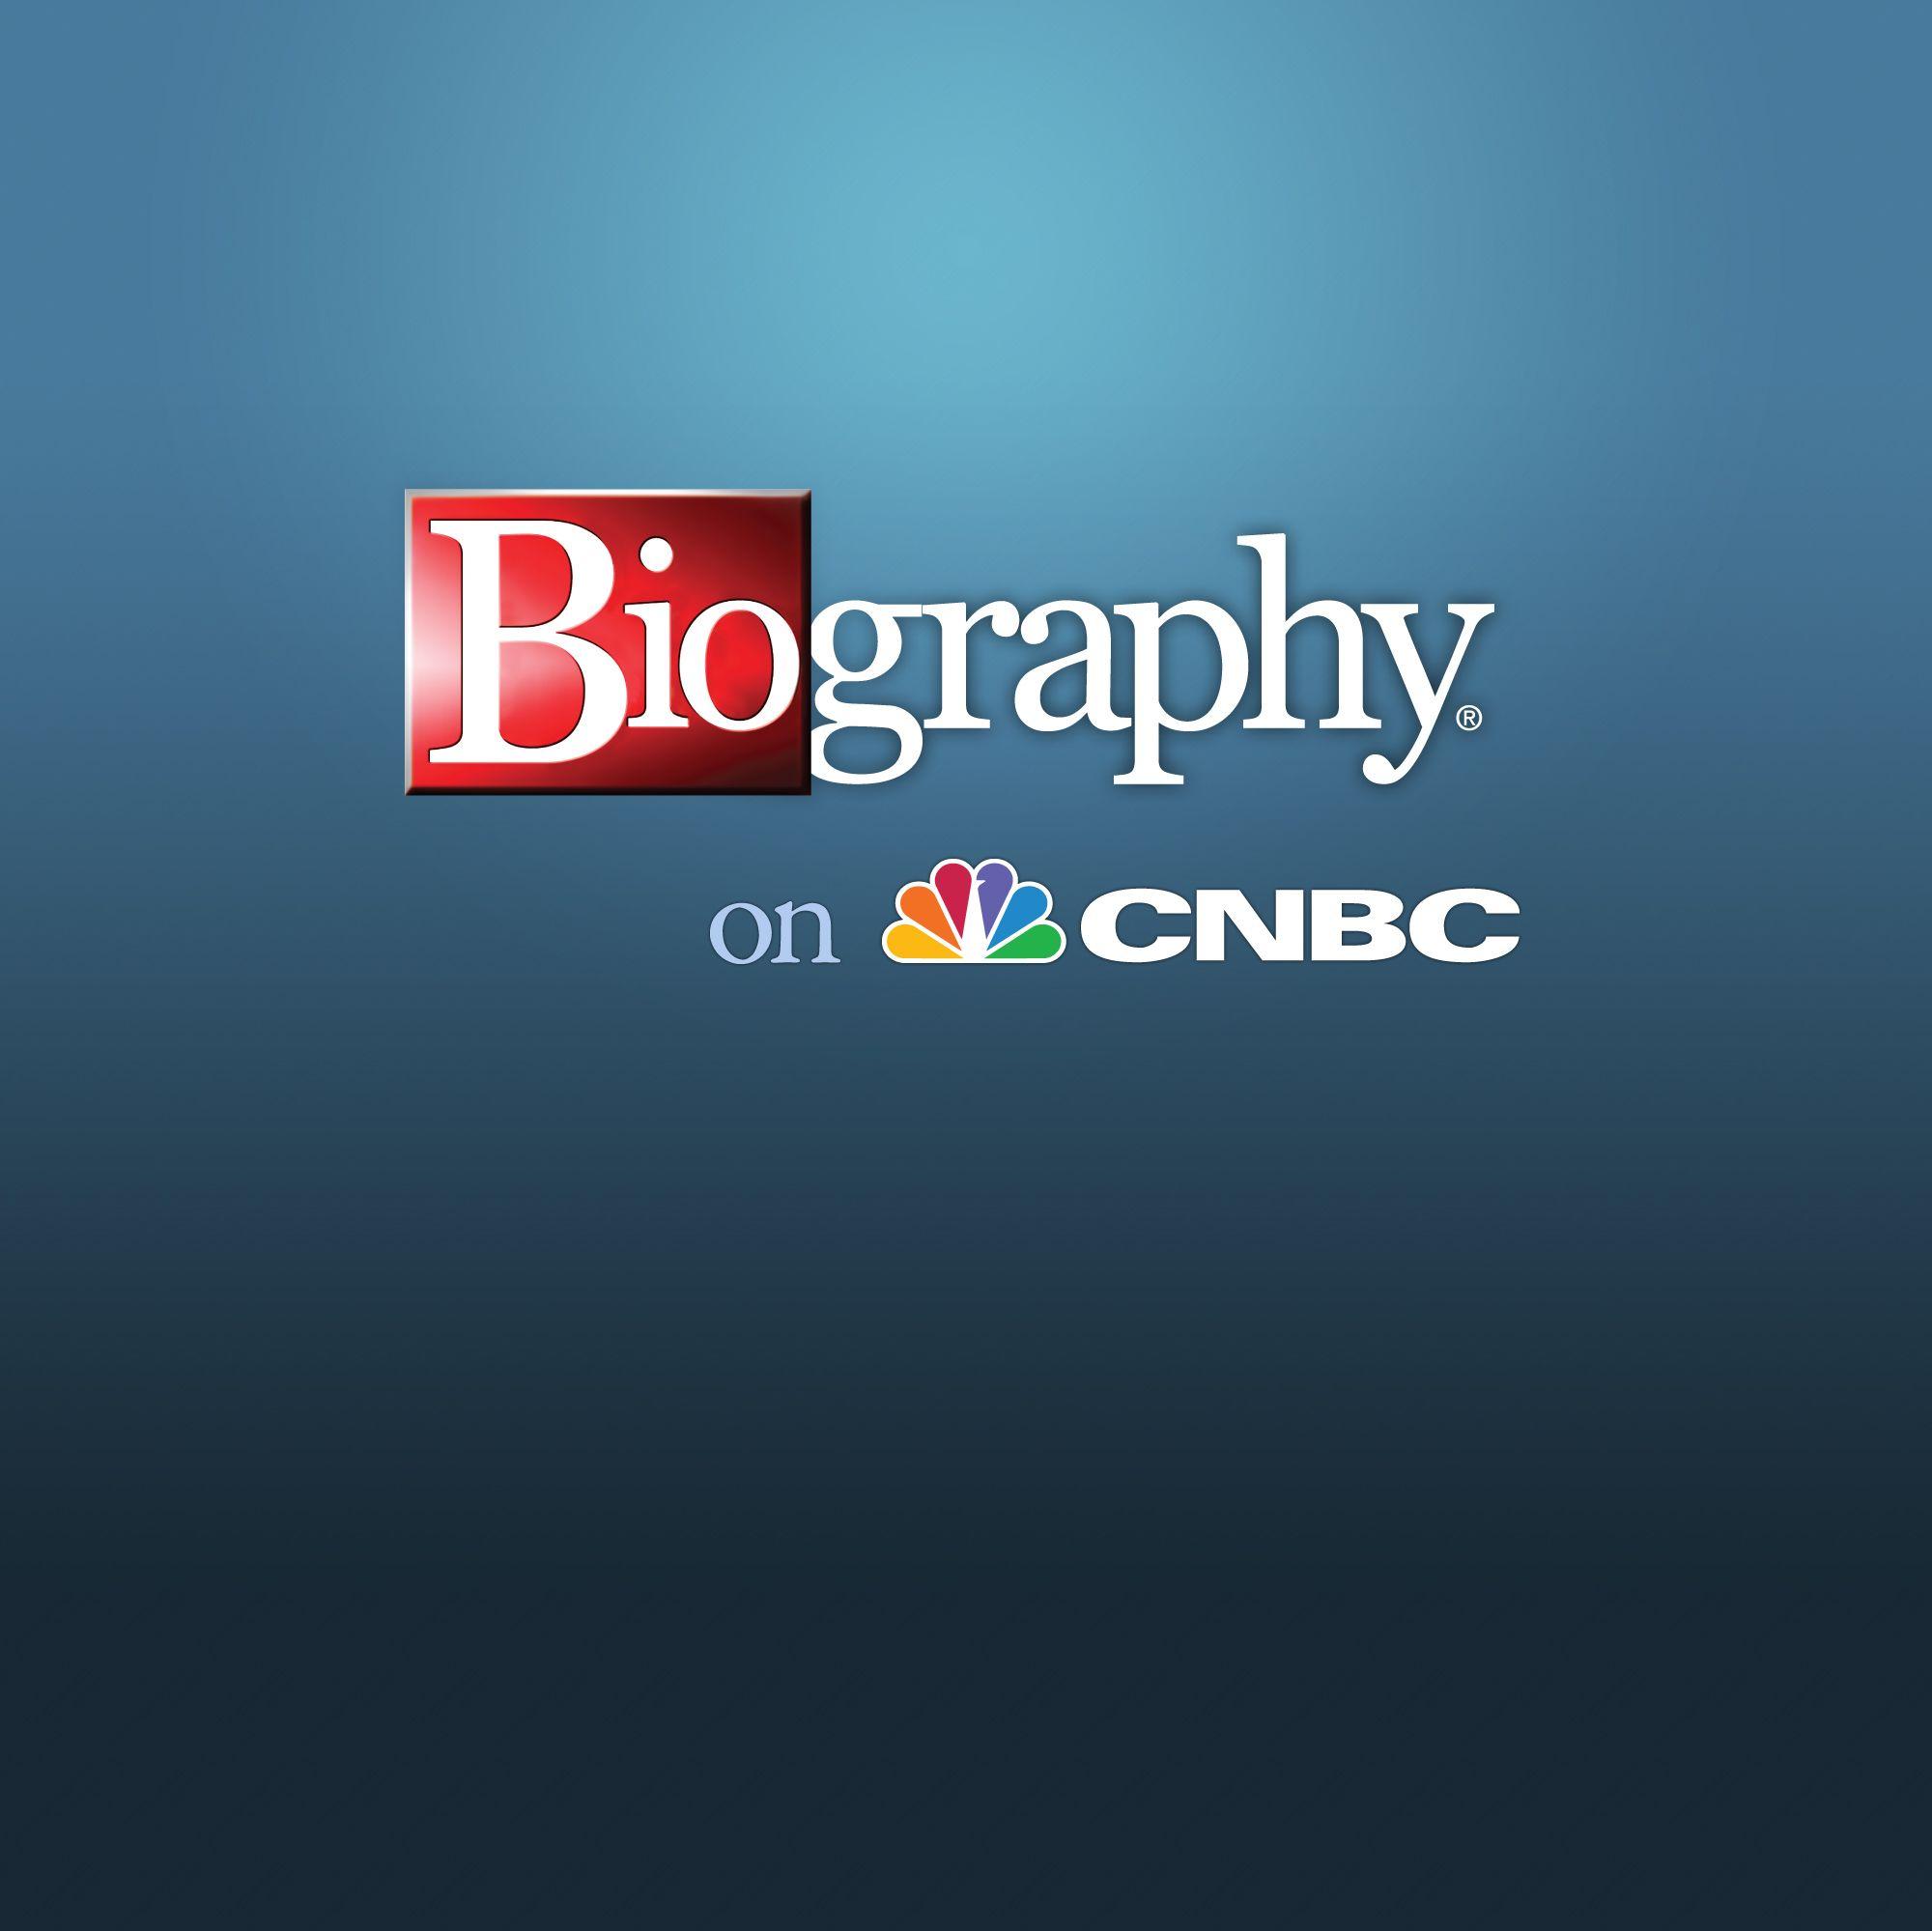 Biography.com Logo - Biography on CNBC